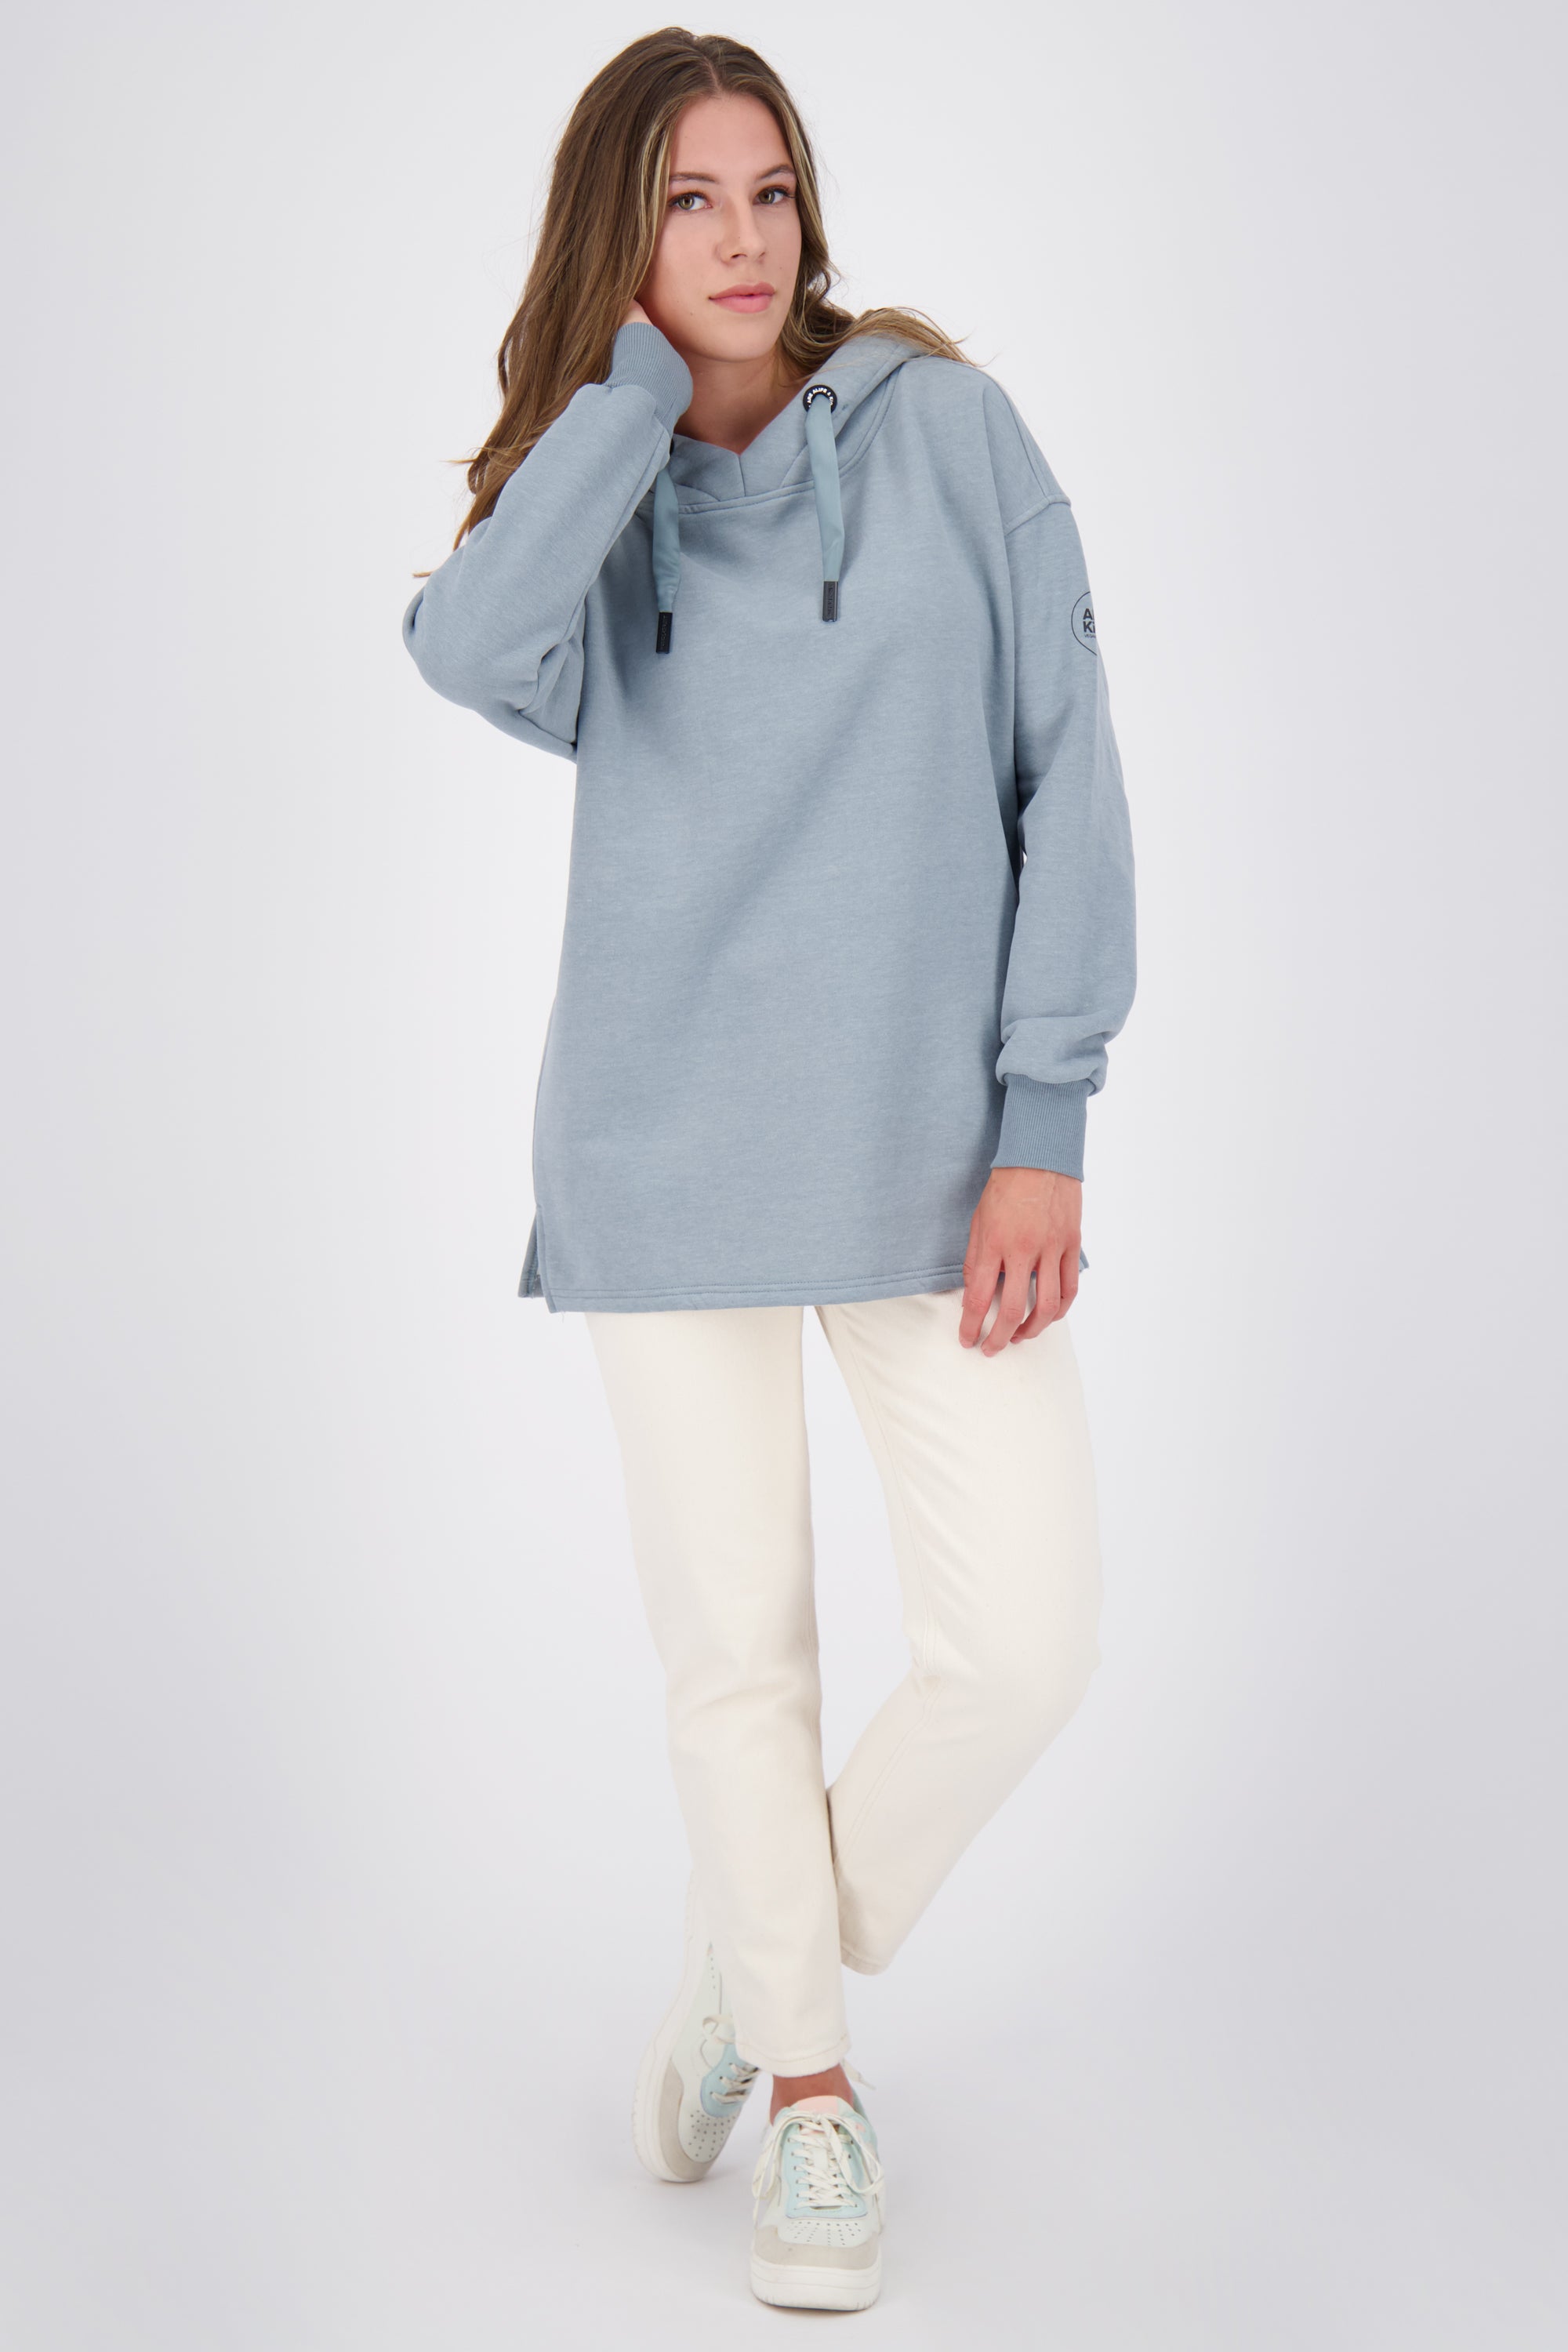 JessicaAK A Kapuzenpullover für Damen - Komfort und Trendiness vereint Grau